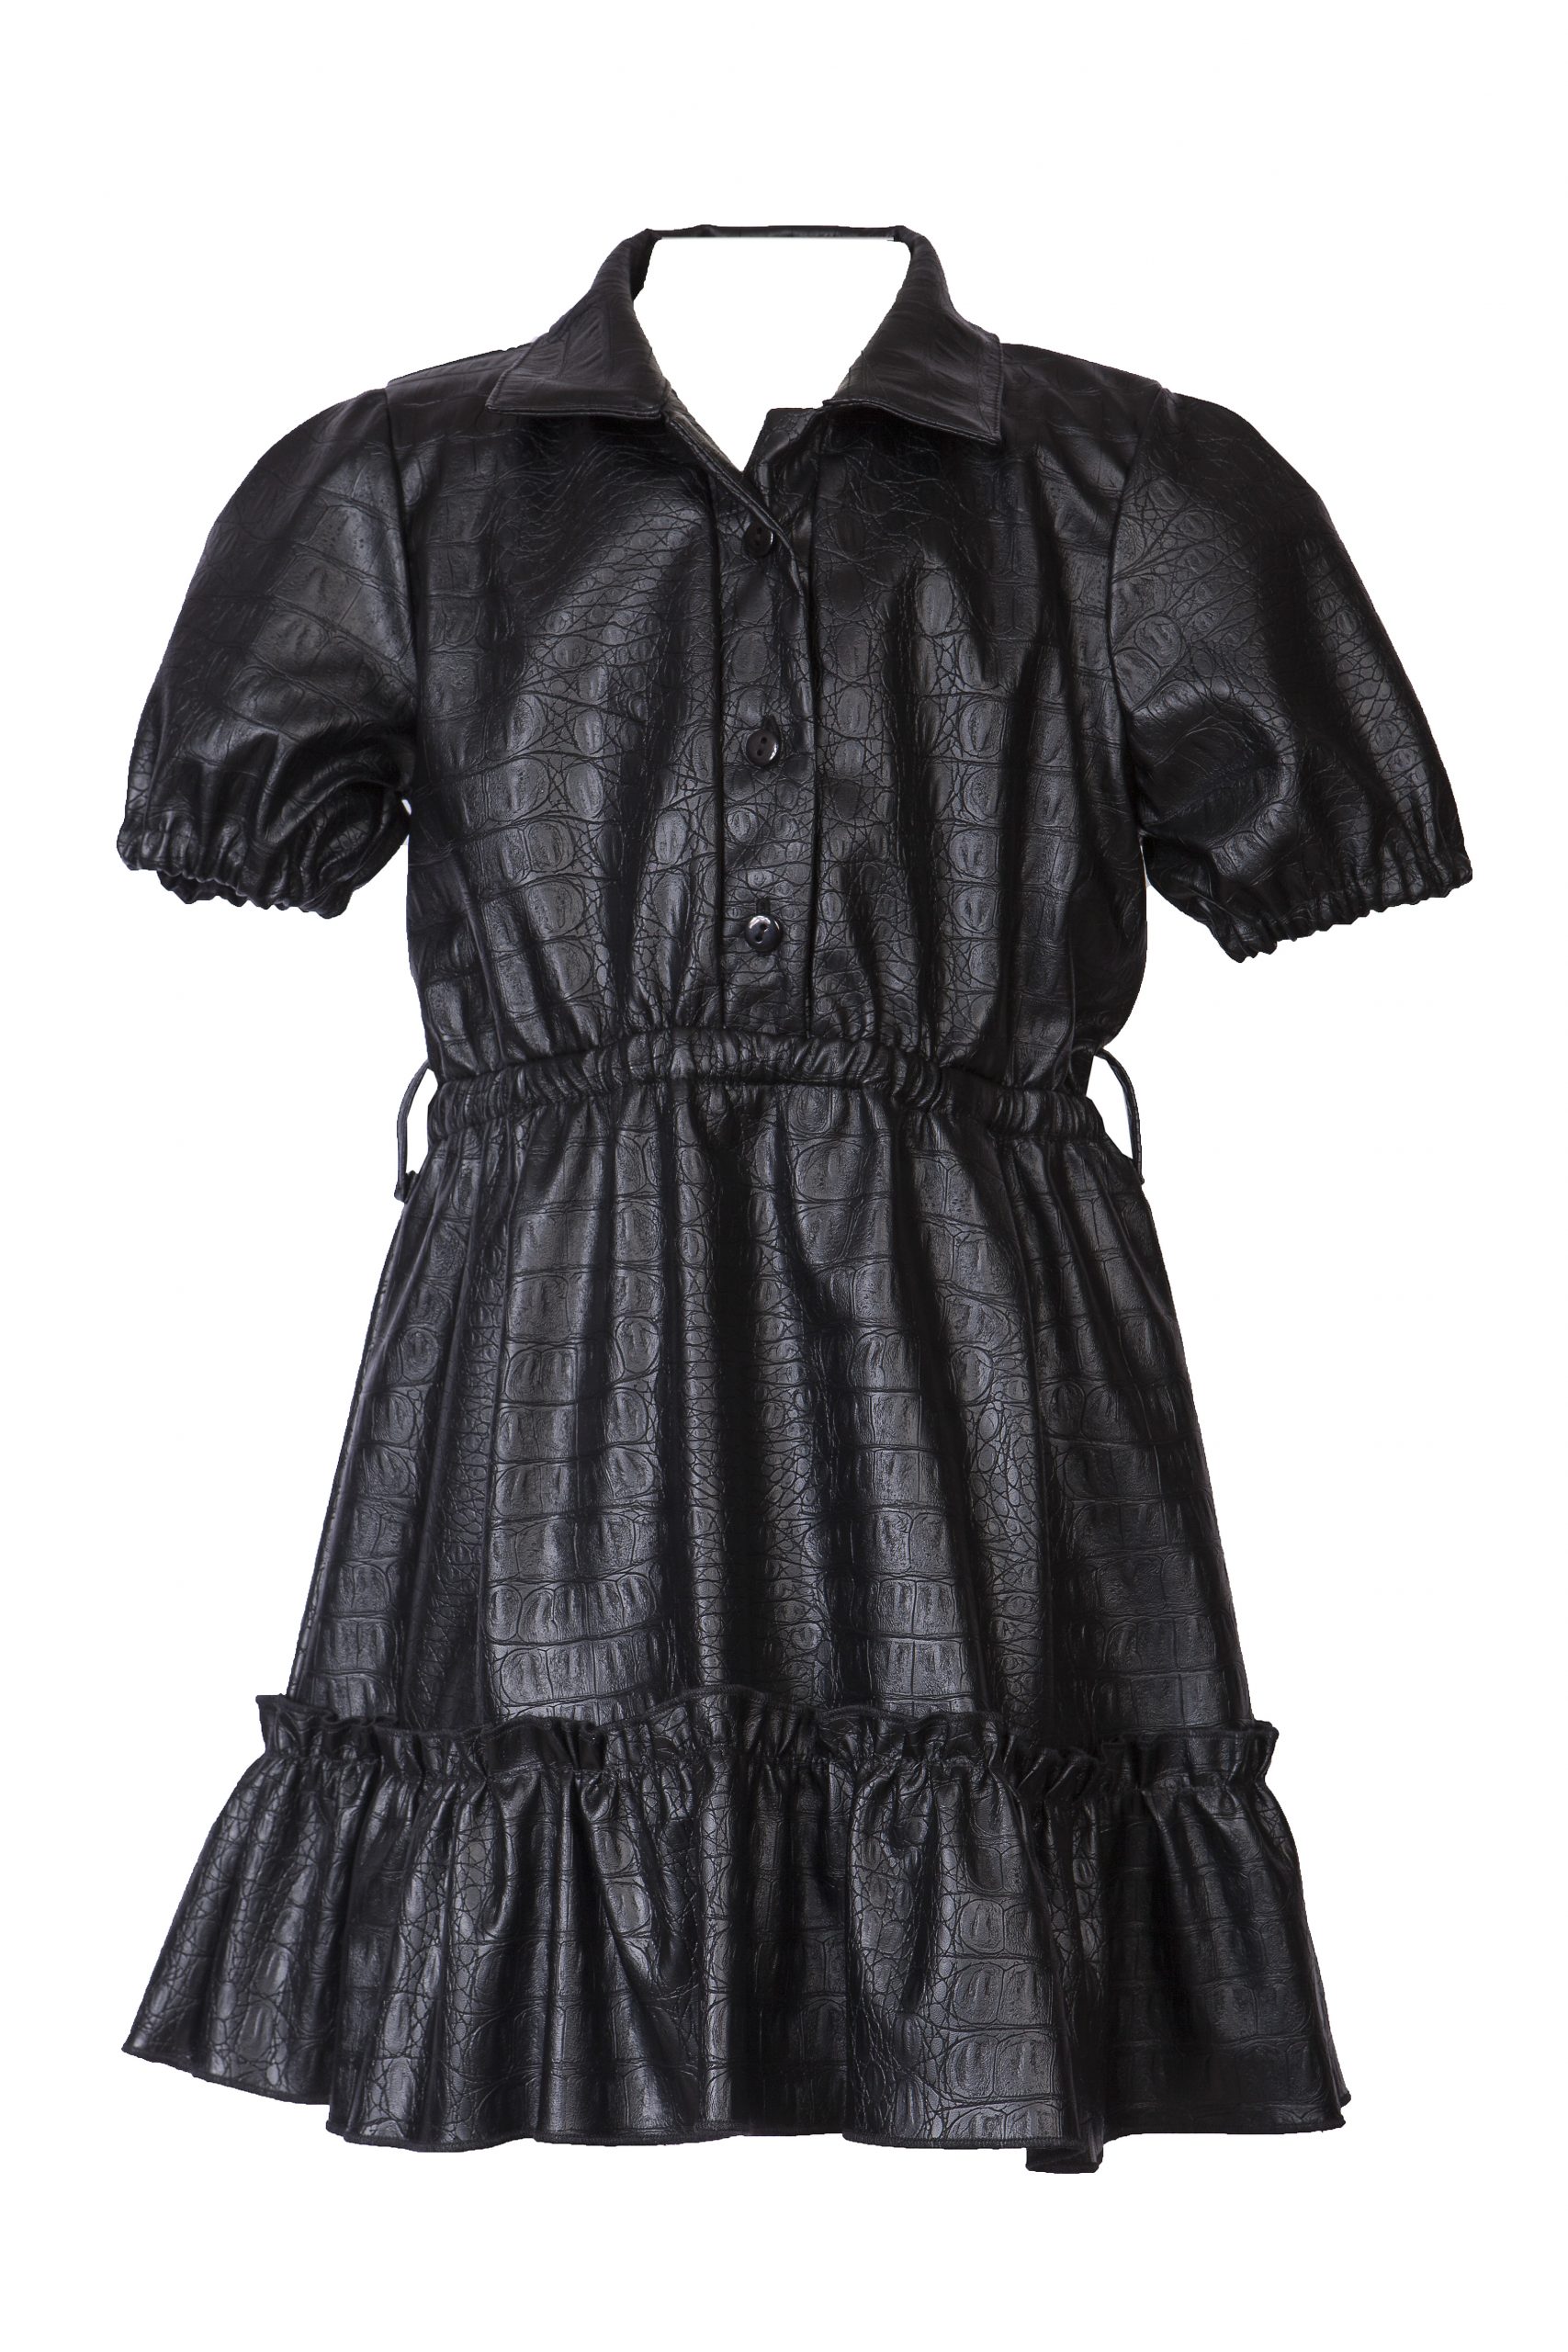 Παιδικό φόρεμα Δερματίνη Μαύρο M&B FASHION 1551-022 - Emporio Shop